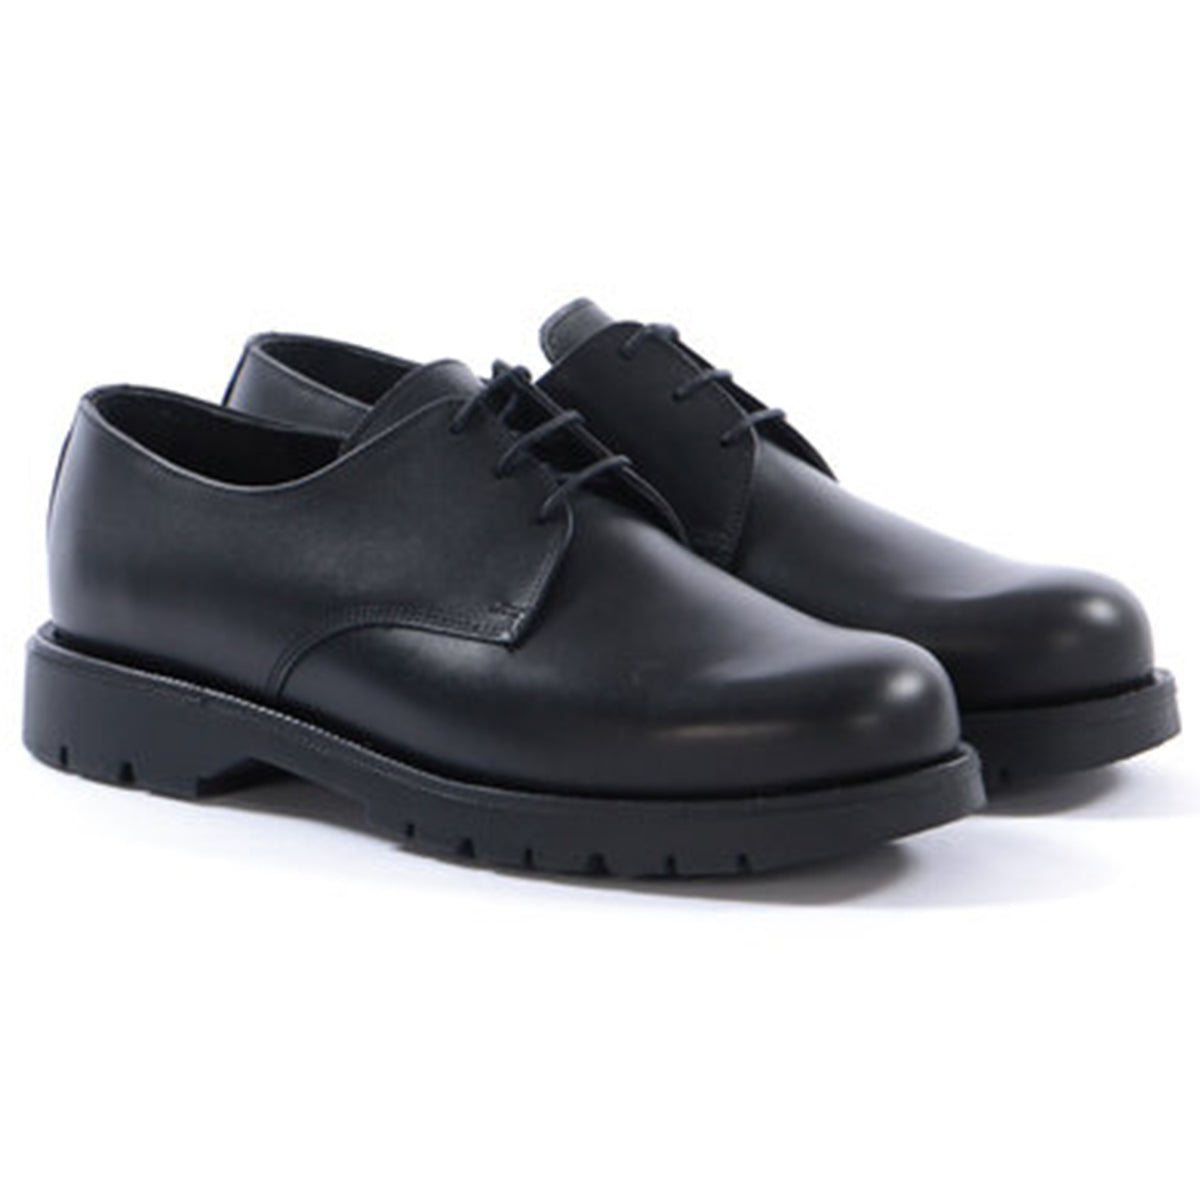 Kleman x Ecole de Pensée Dormance Derby Shoe Collaboration Footwear Black